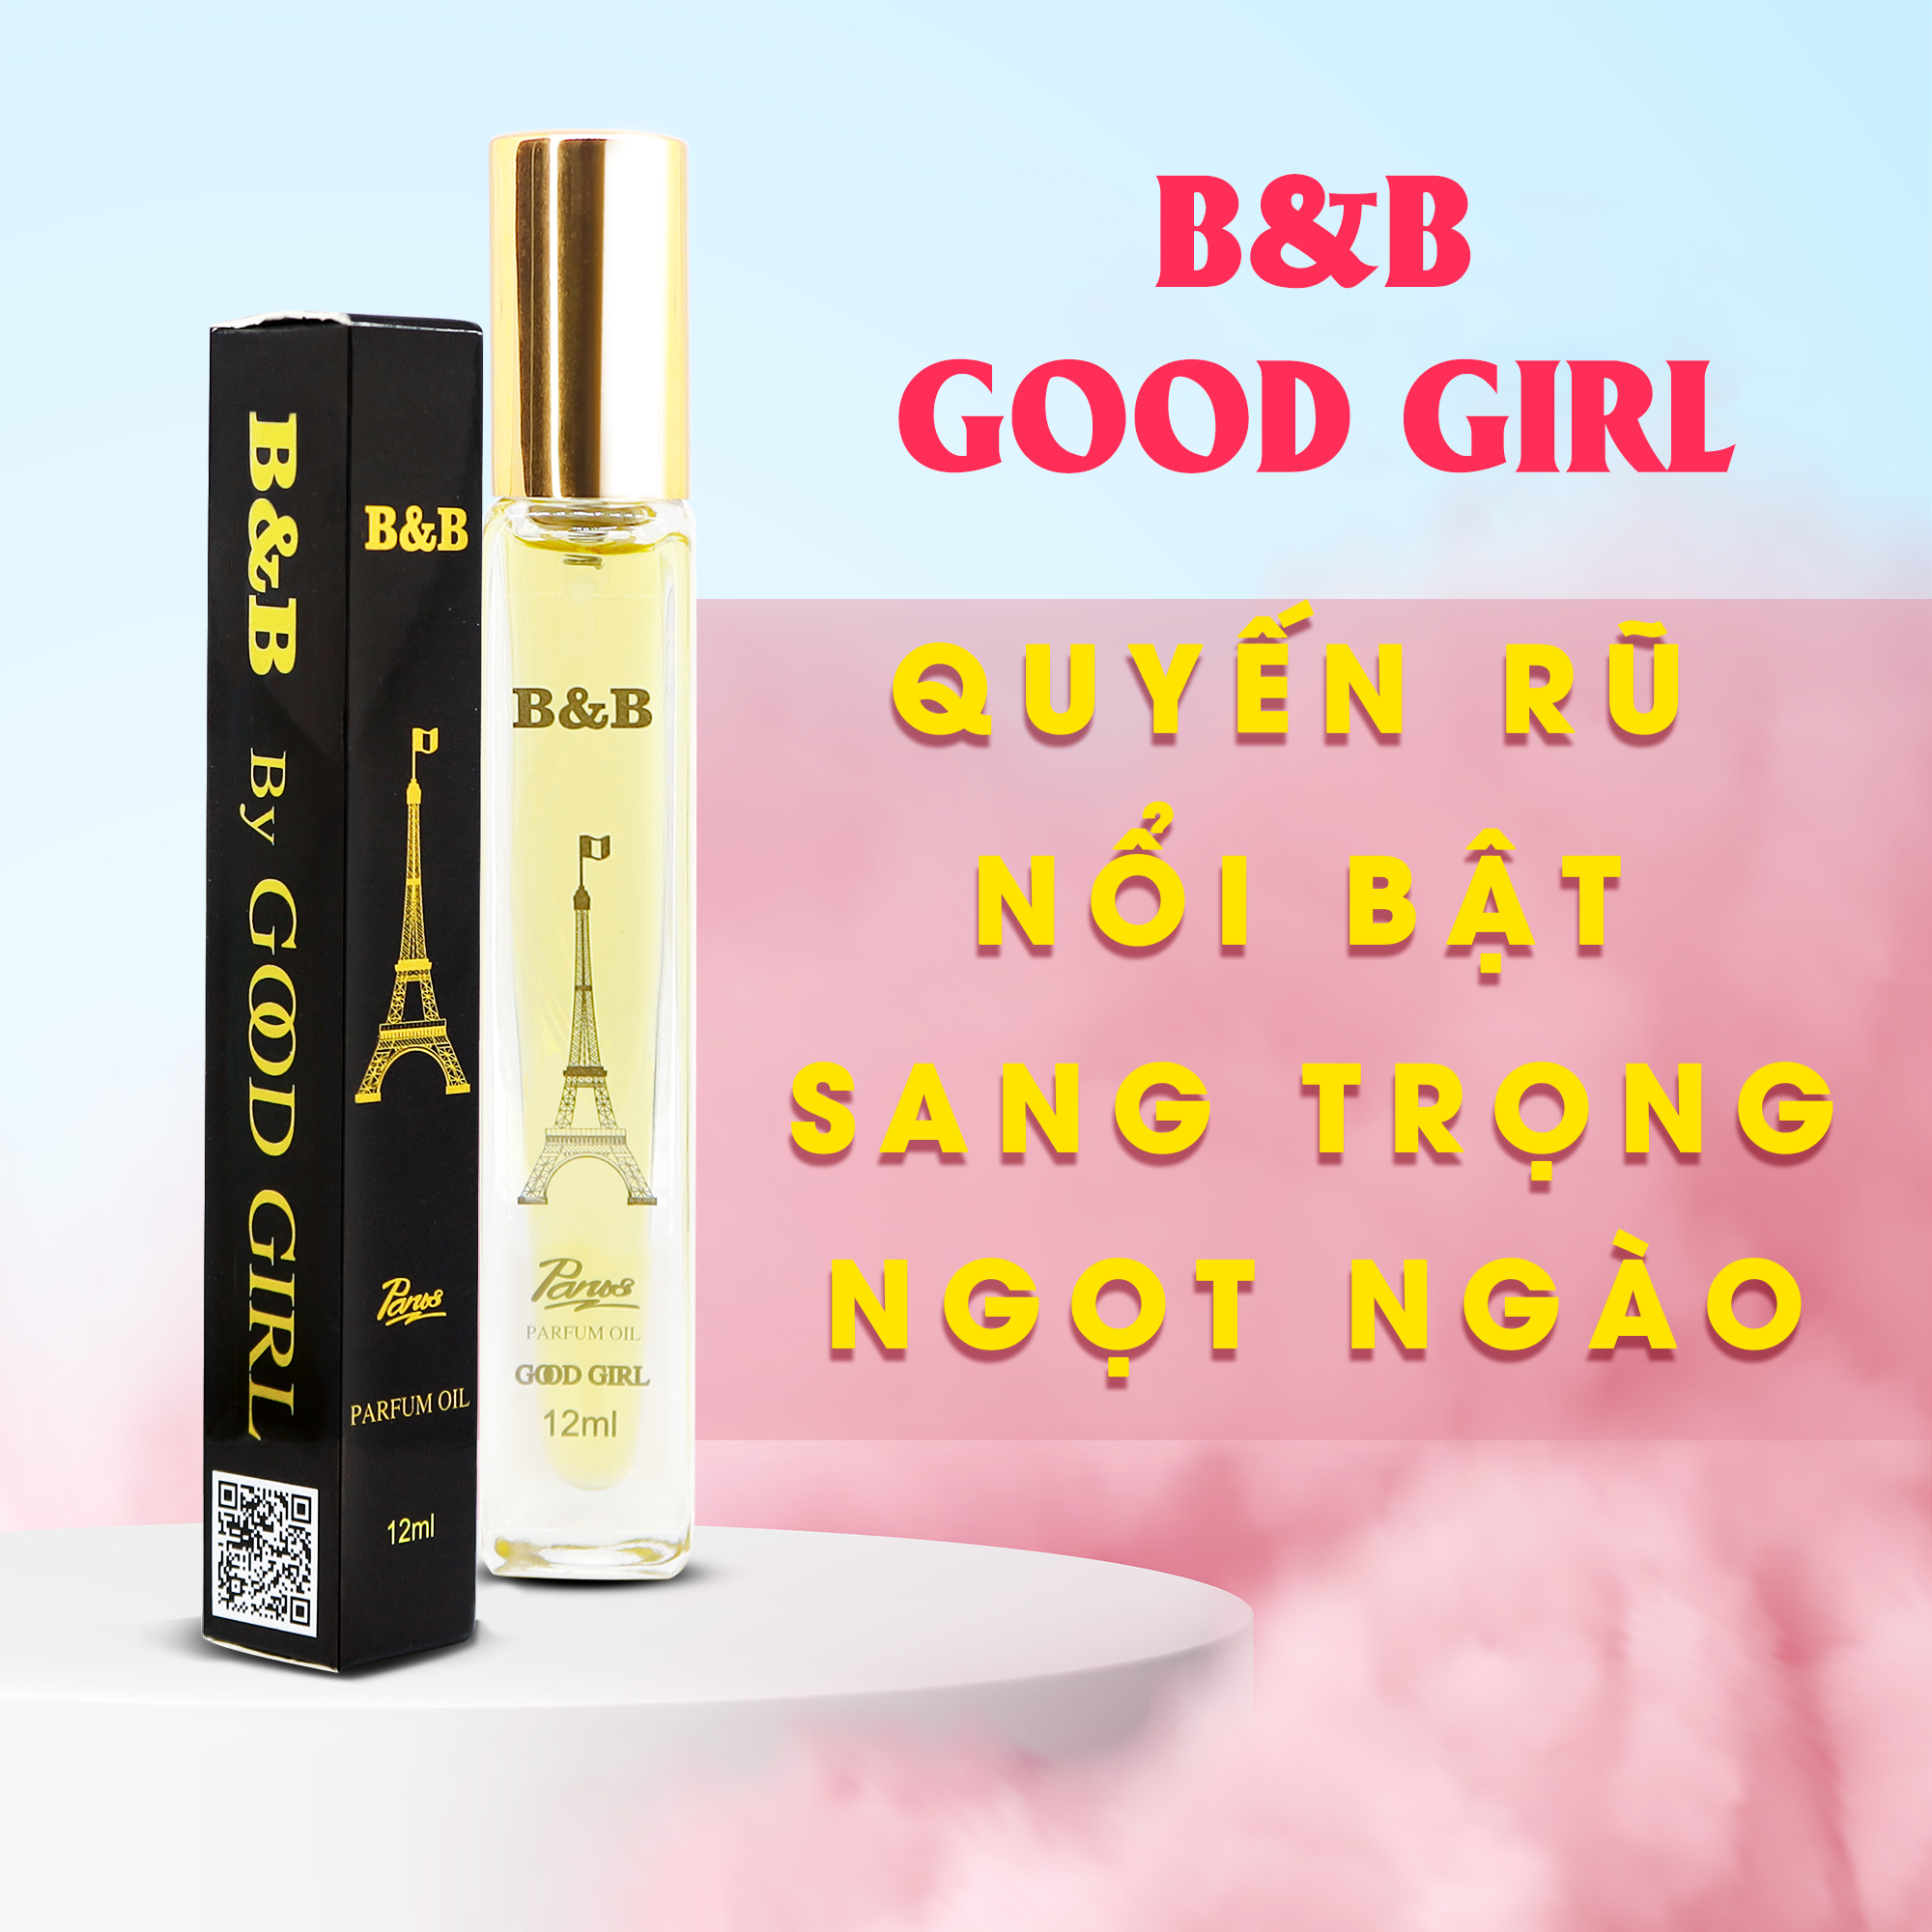 Tinh dầu nước hoa nữ B&B By Good Girl EDP 12 ml lưu hương lâu ngọt ngào